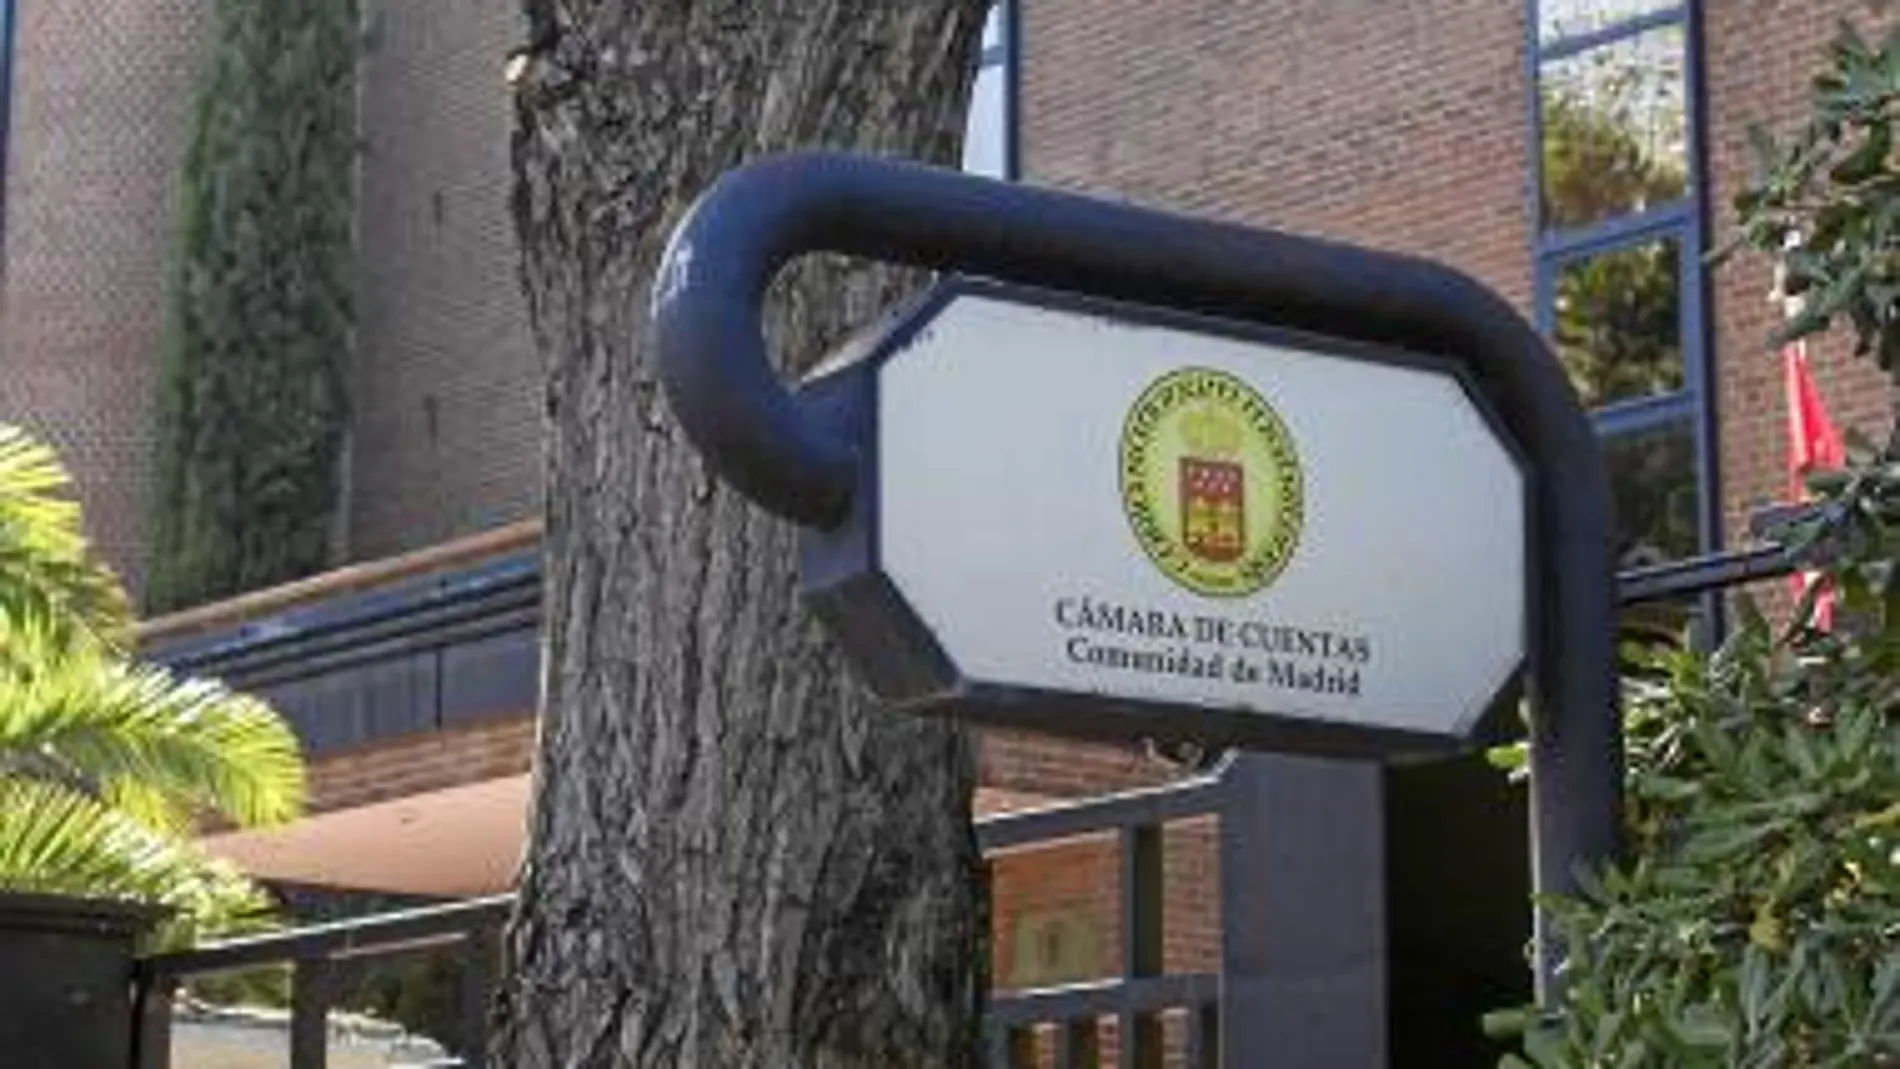 La Cámara de Cuentas, que fiscaliza la actividad del sector público en la Comunidad, se fundó en 1999